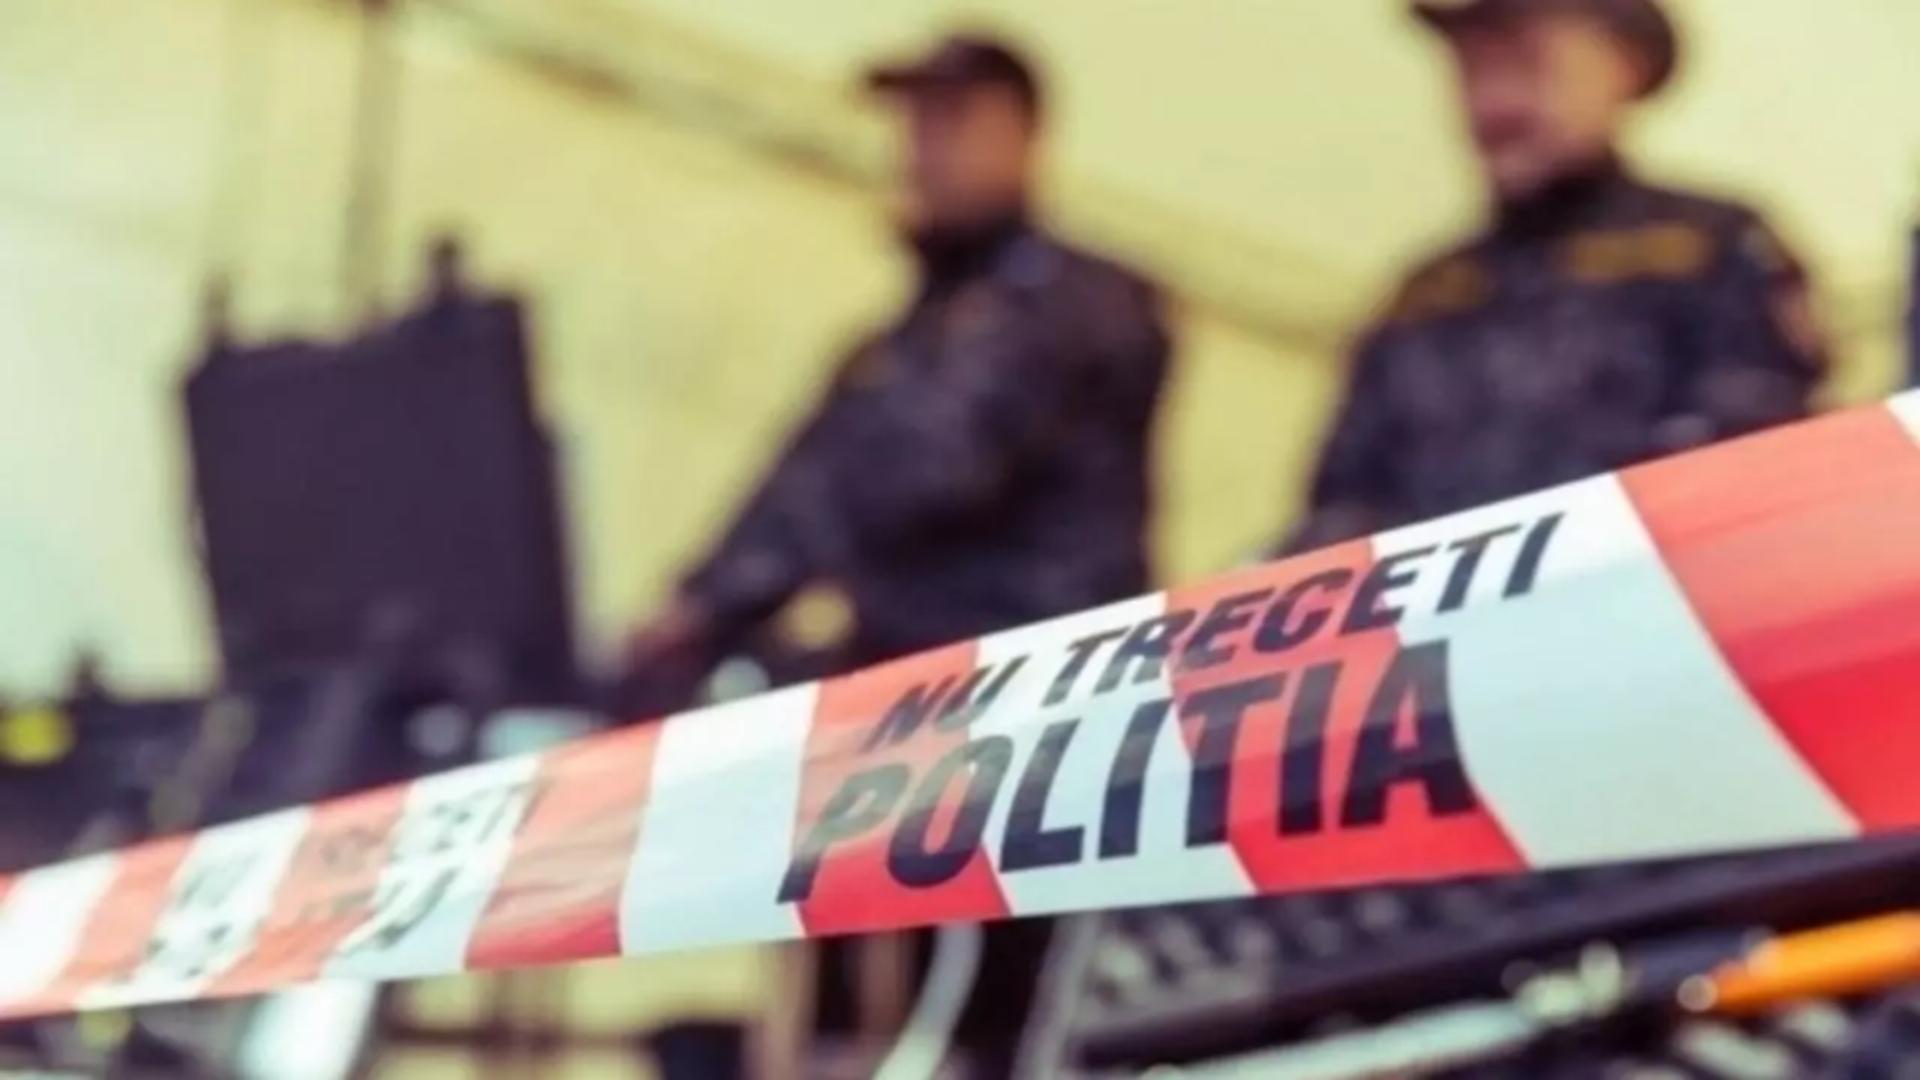 Crima șocantă care zguduie România: O femeie a fost găsită moartă, cu lovituri puternice la cap – Primele indicii: a fost o moarte violentă